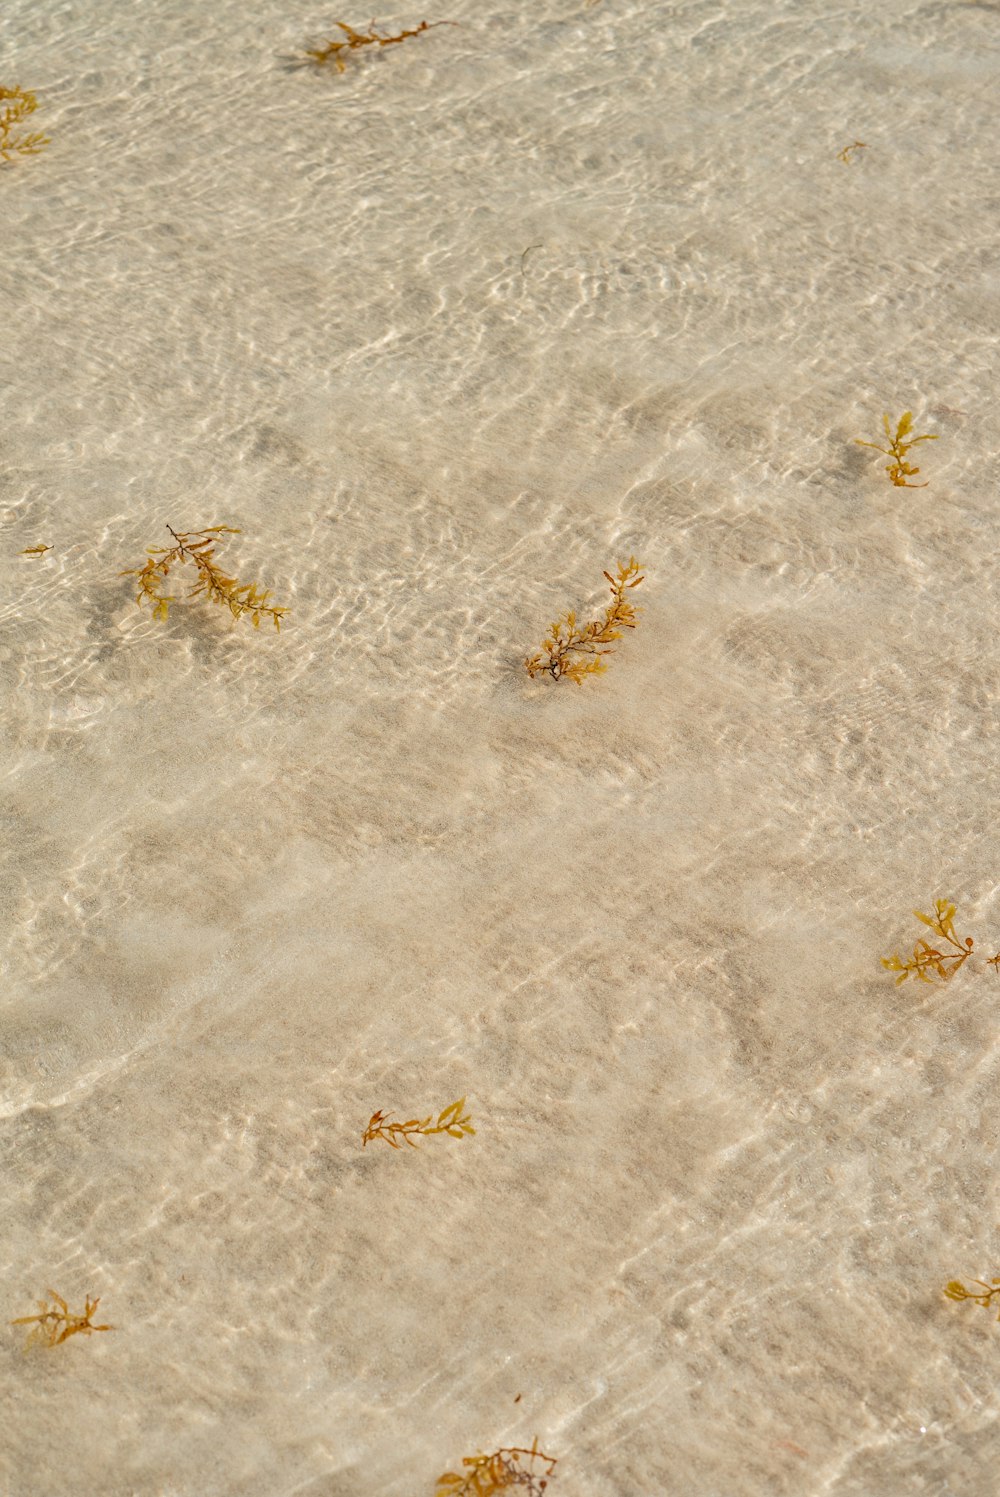 모래 사장 위에 떠 있는 해초 무리